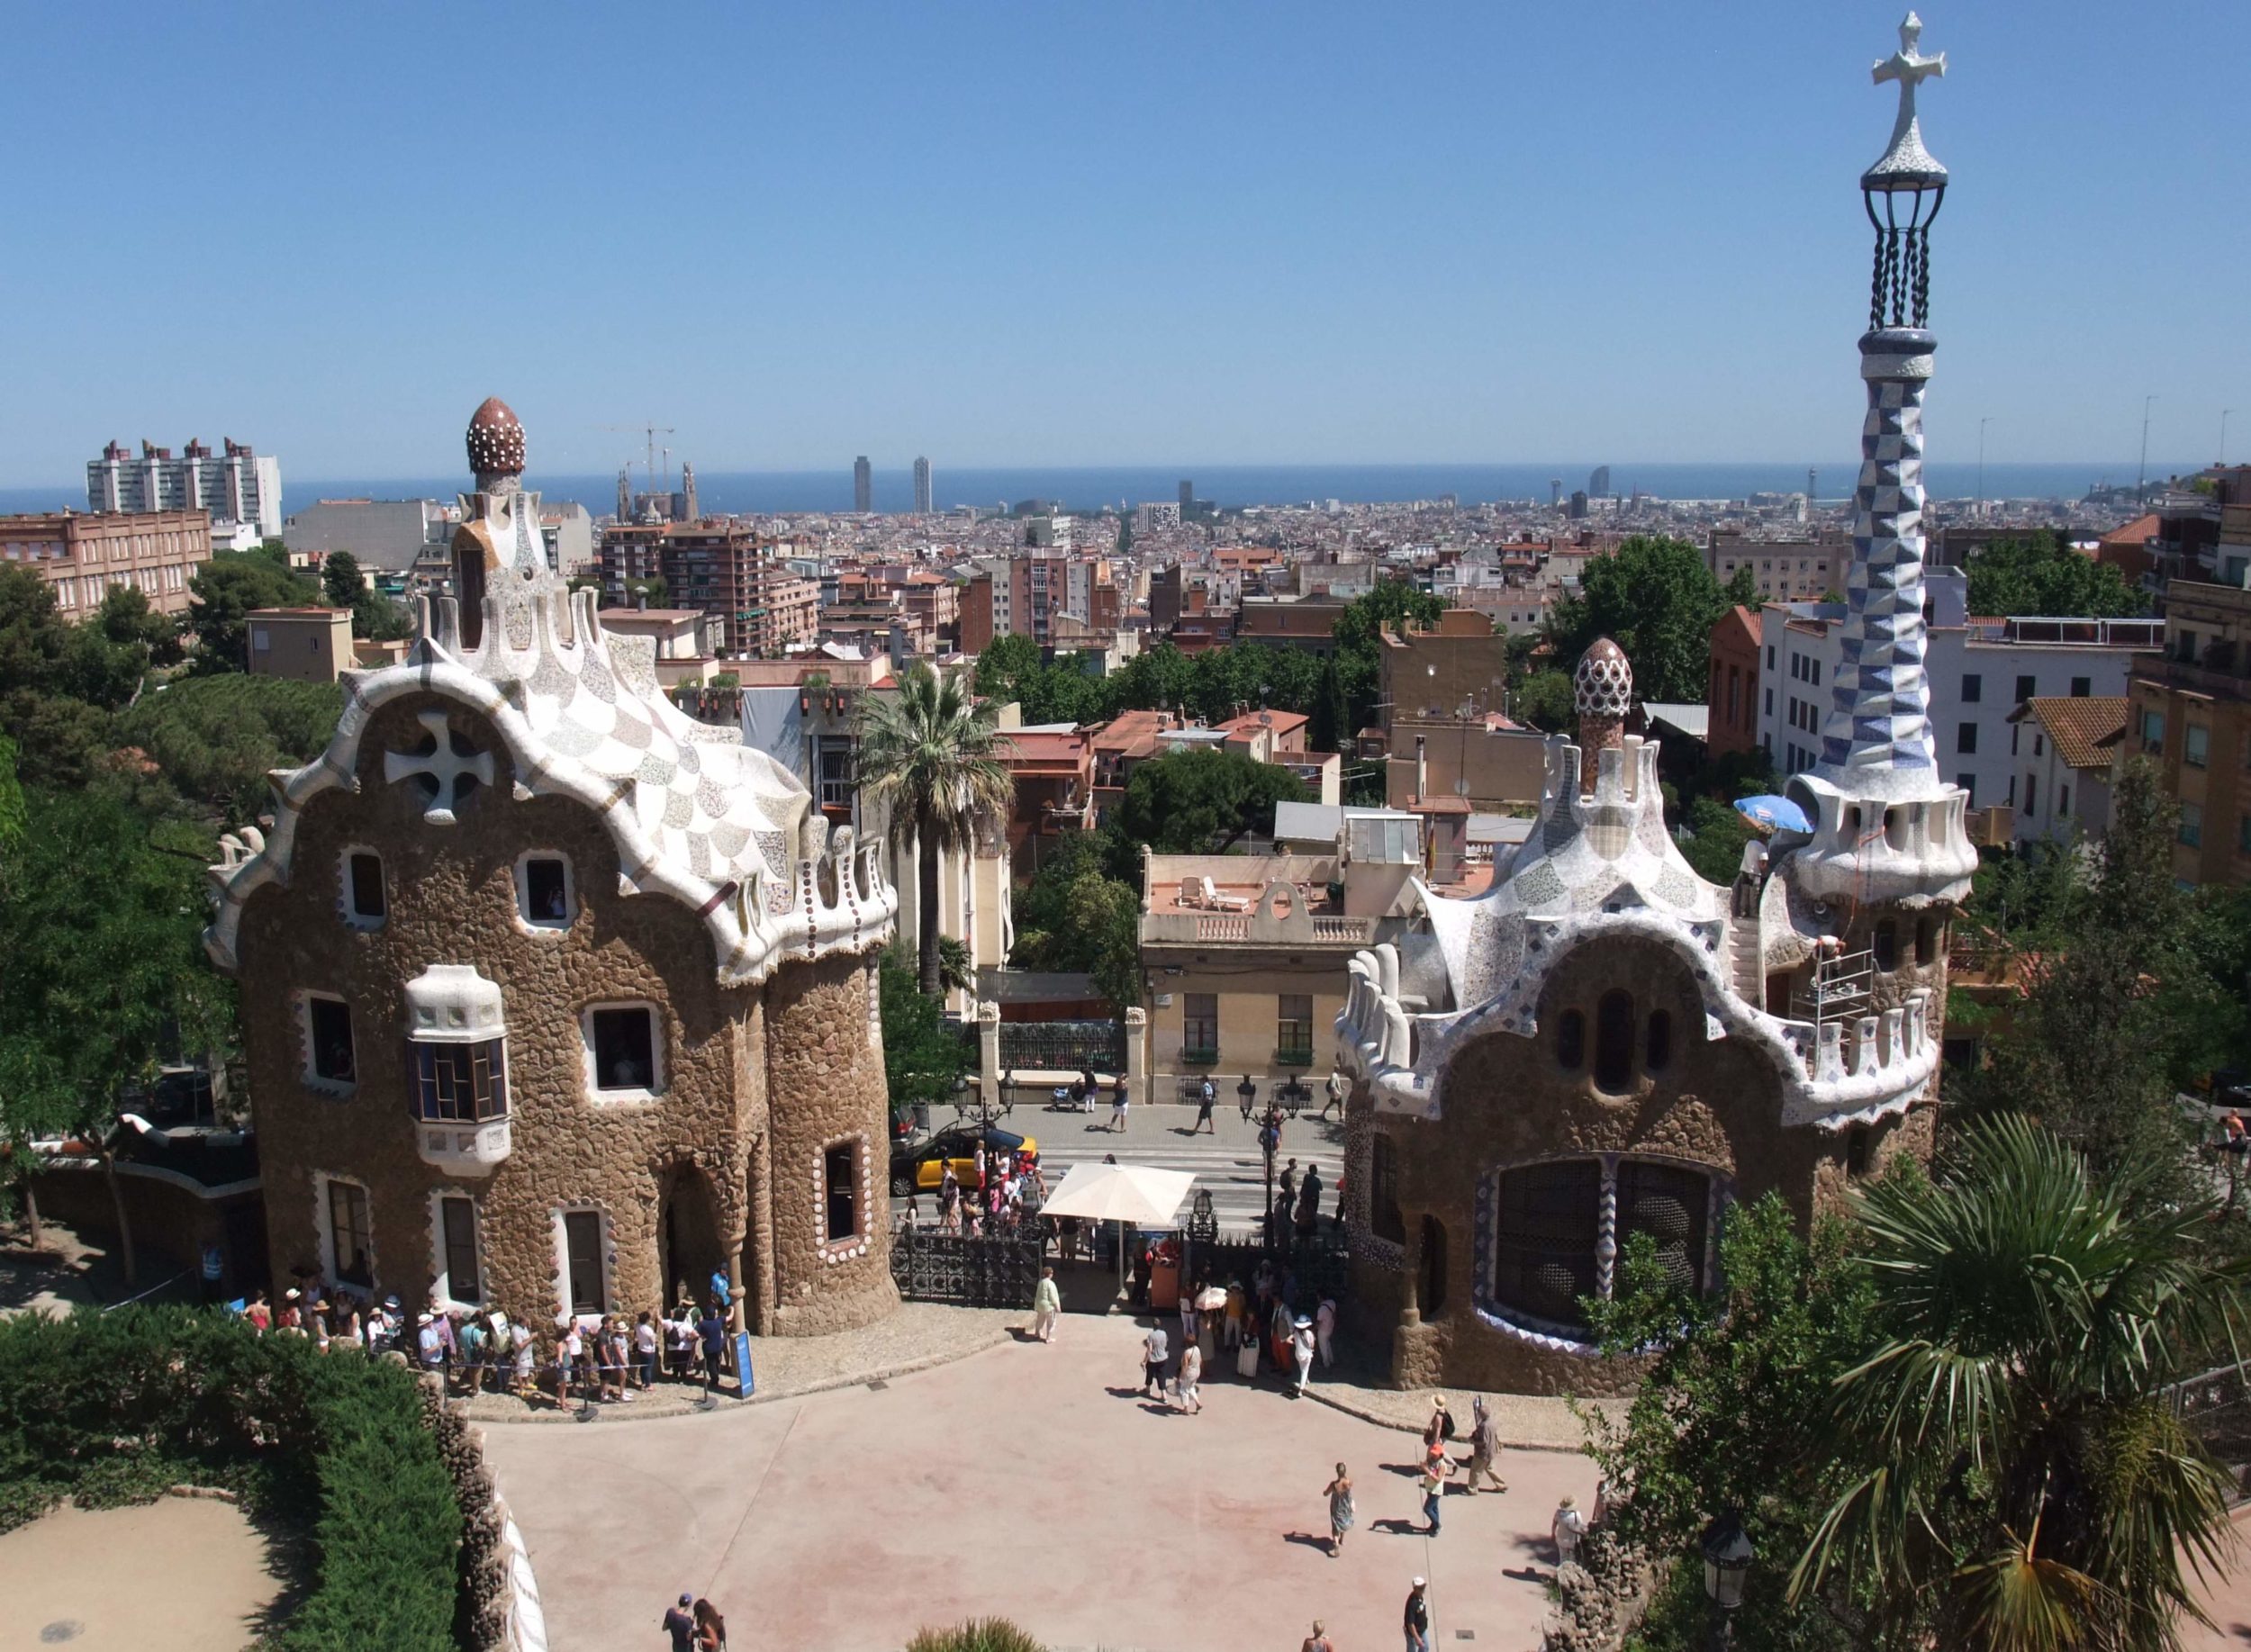 Barcelone : Découverte culturelle et culinaire pour les CAP 1 et 2  APR du 1er au 5 juin 2015